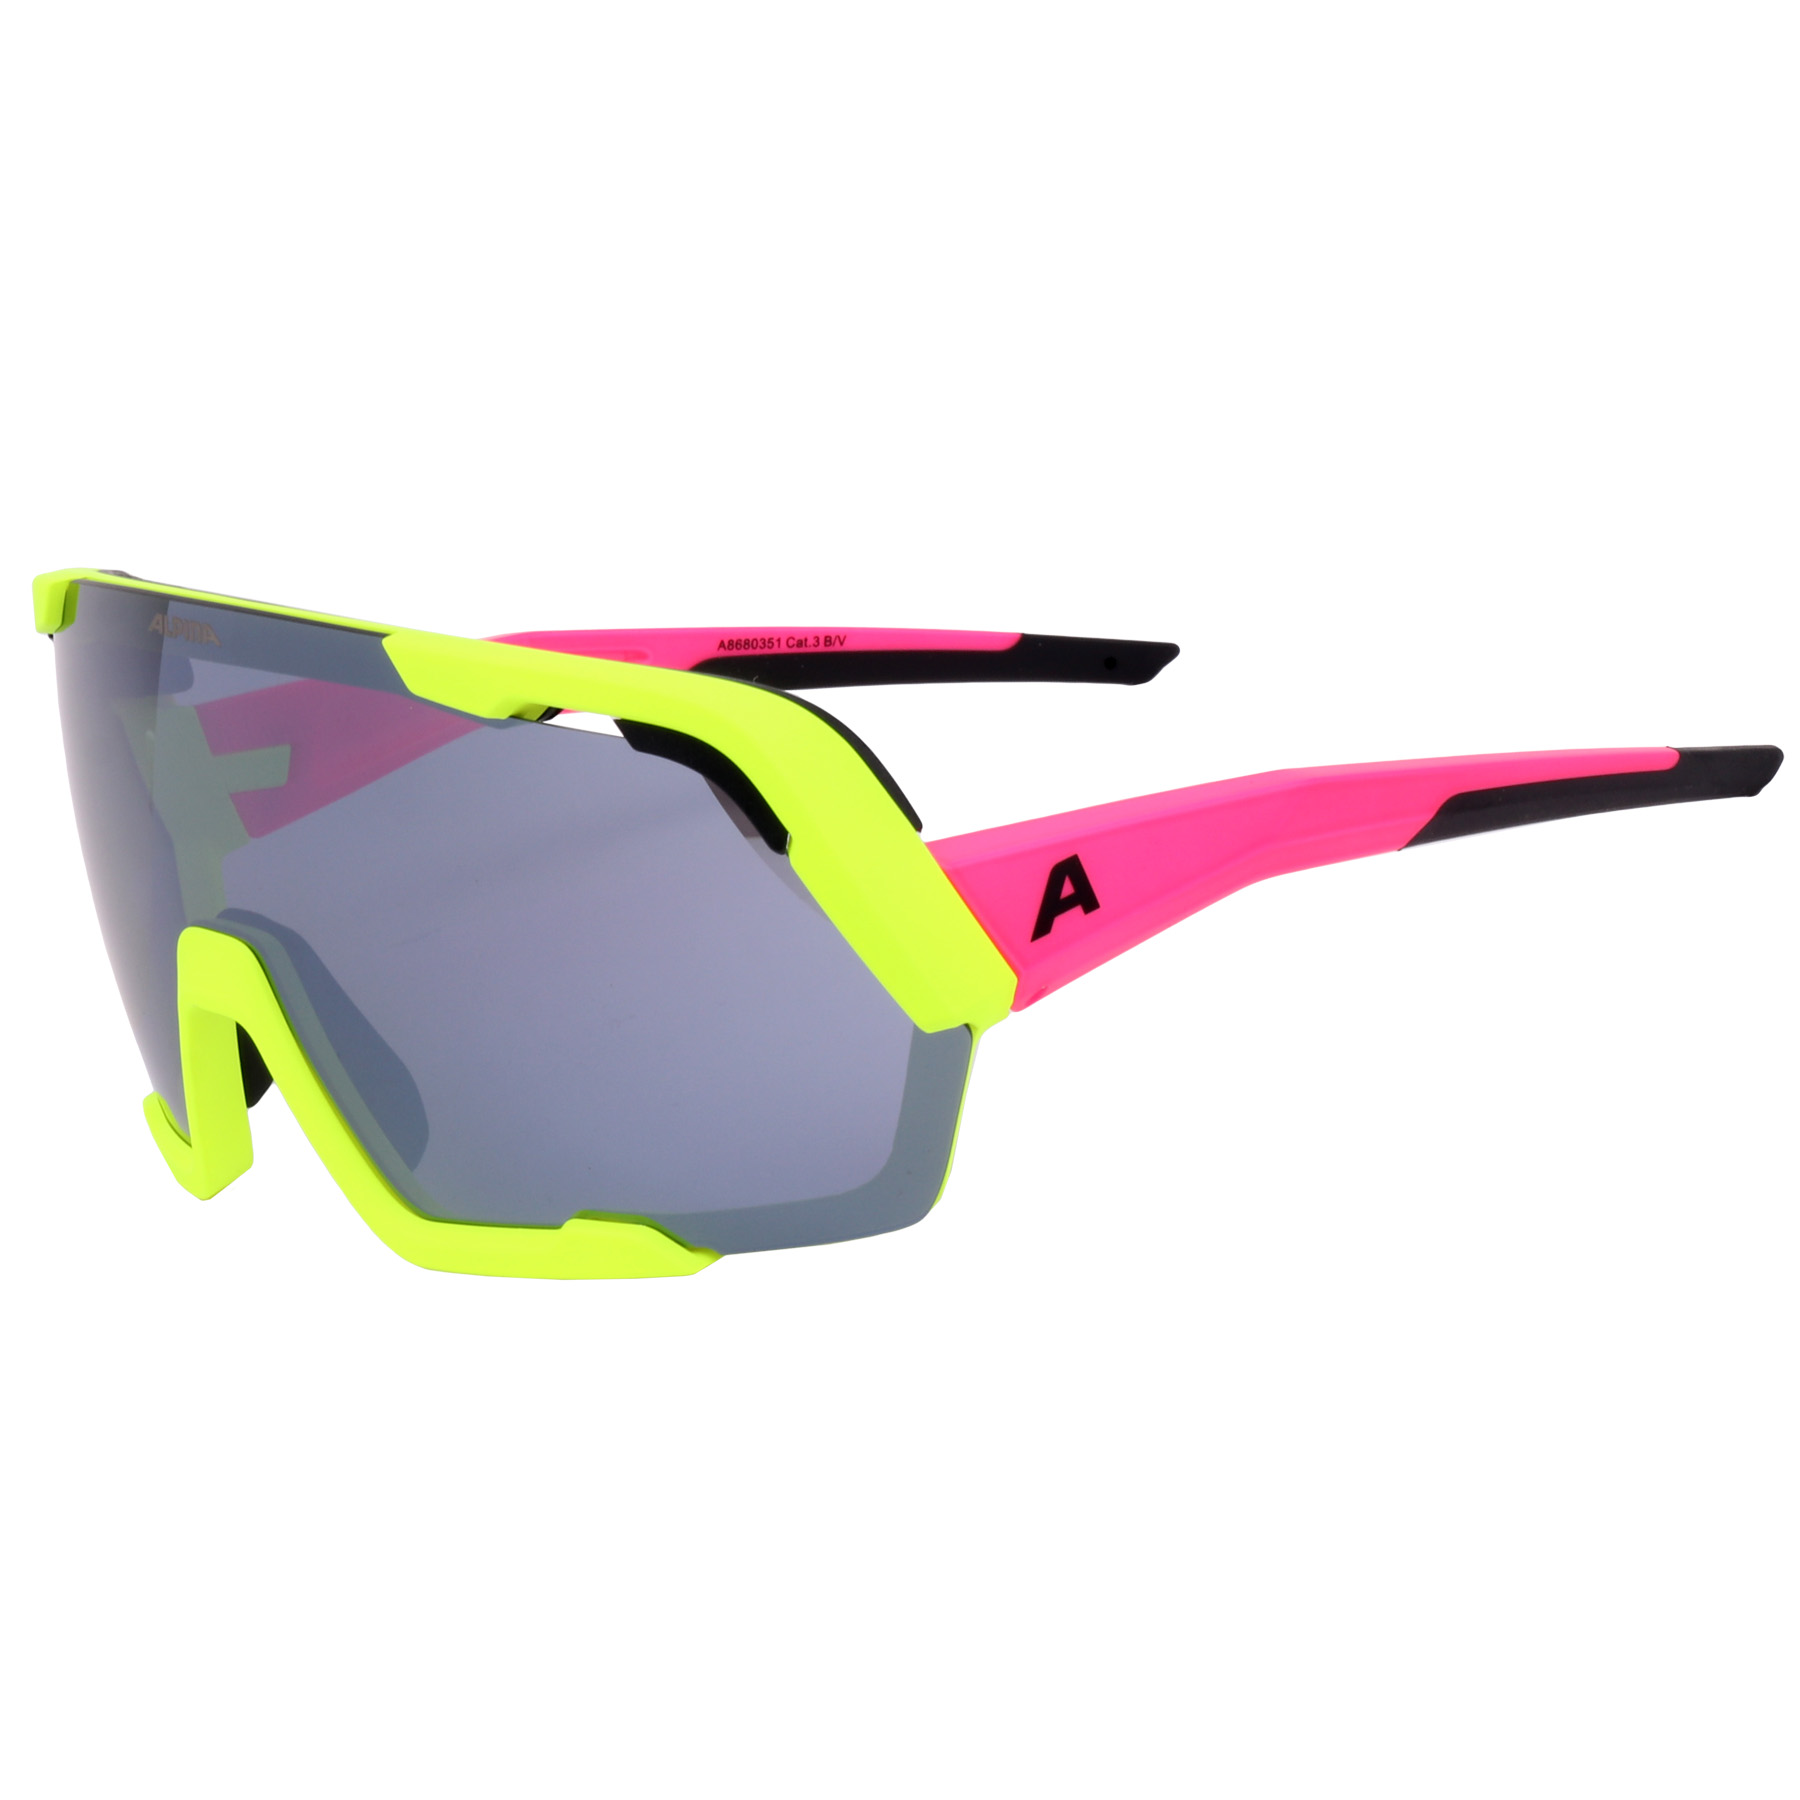 Produktbild von Alpina Rocket Bold Brille - Neon-Pink Yellow Matt / Black Mirror